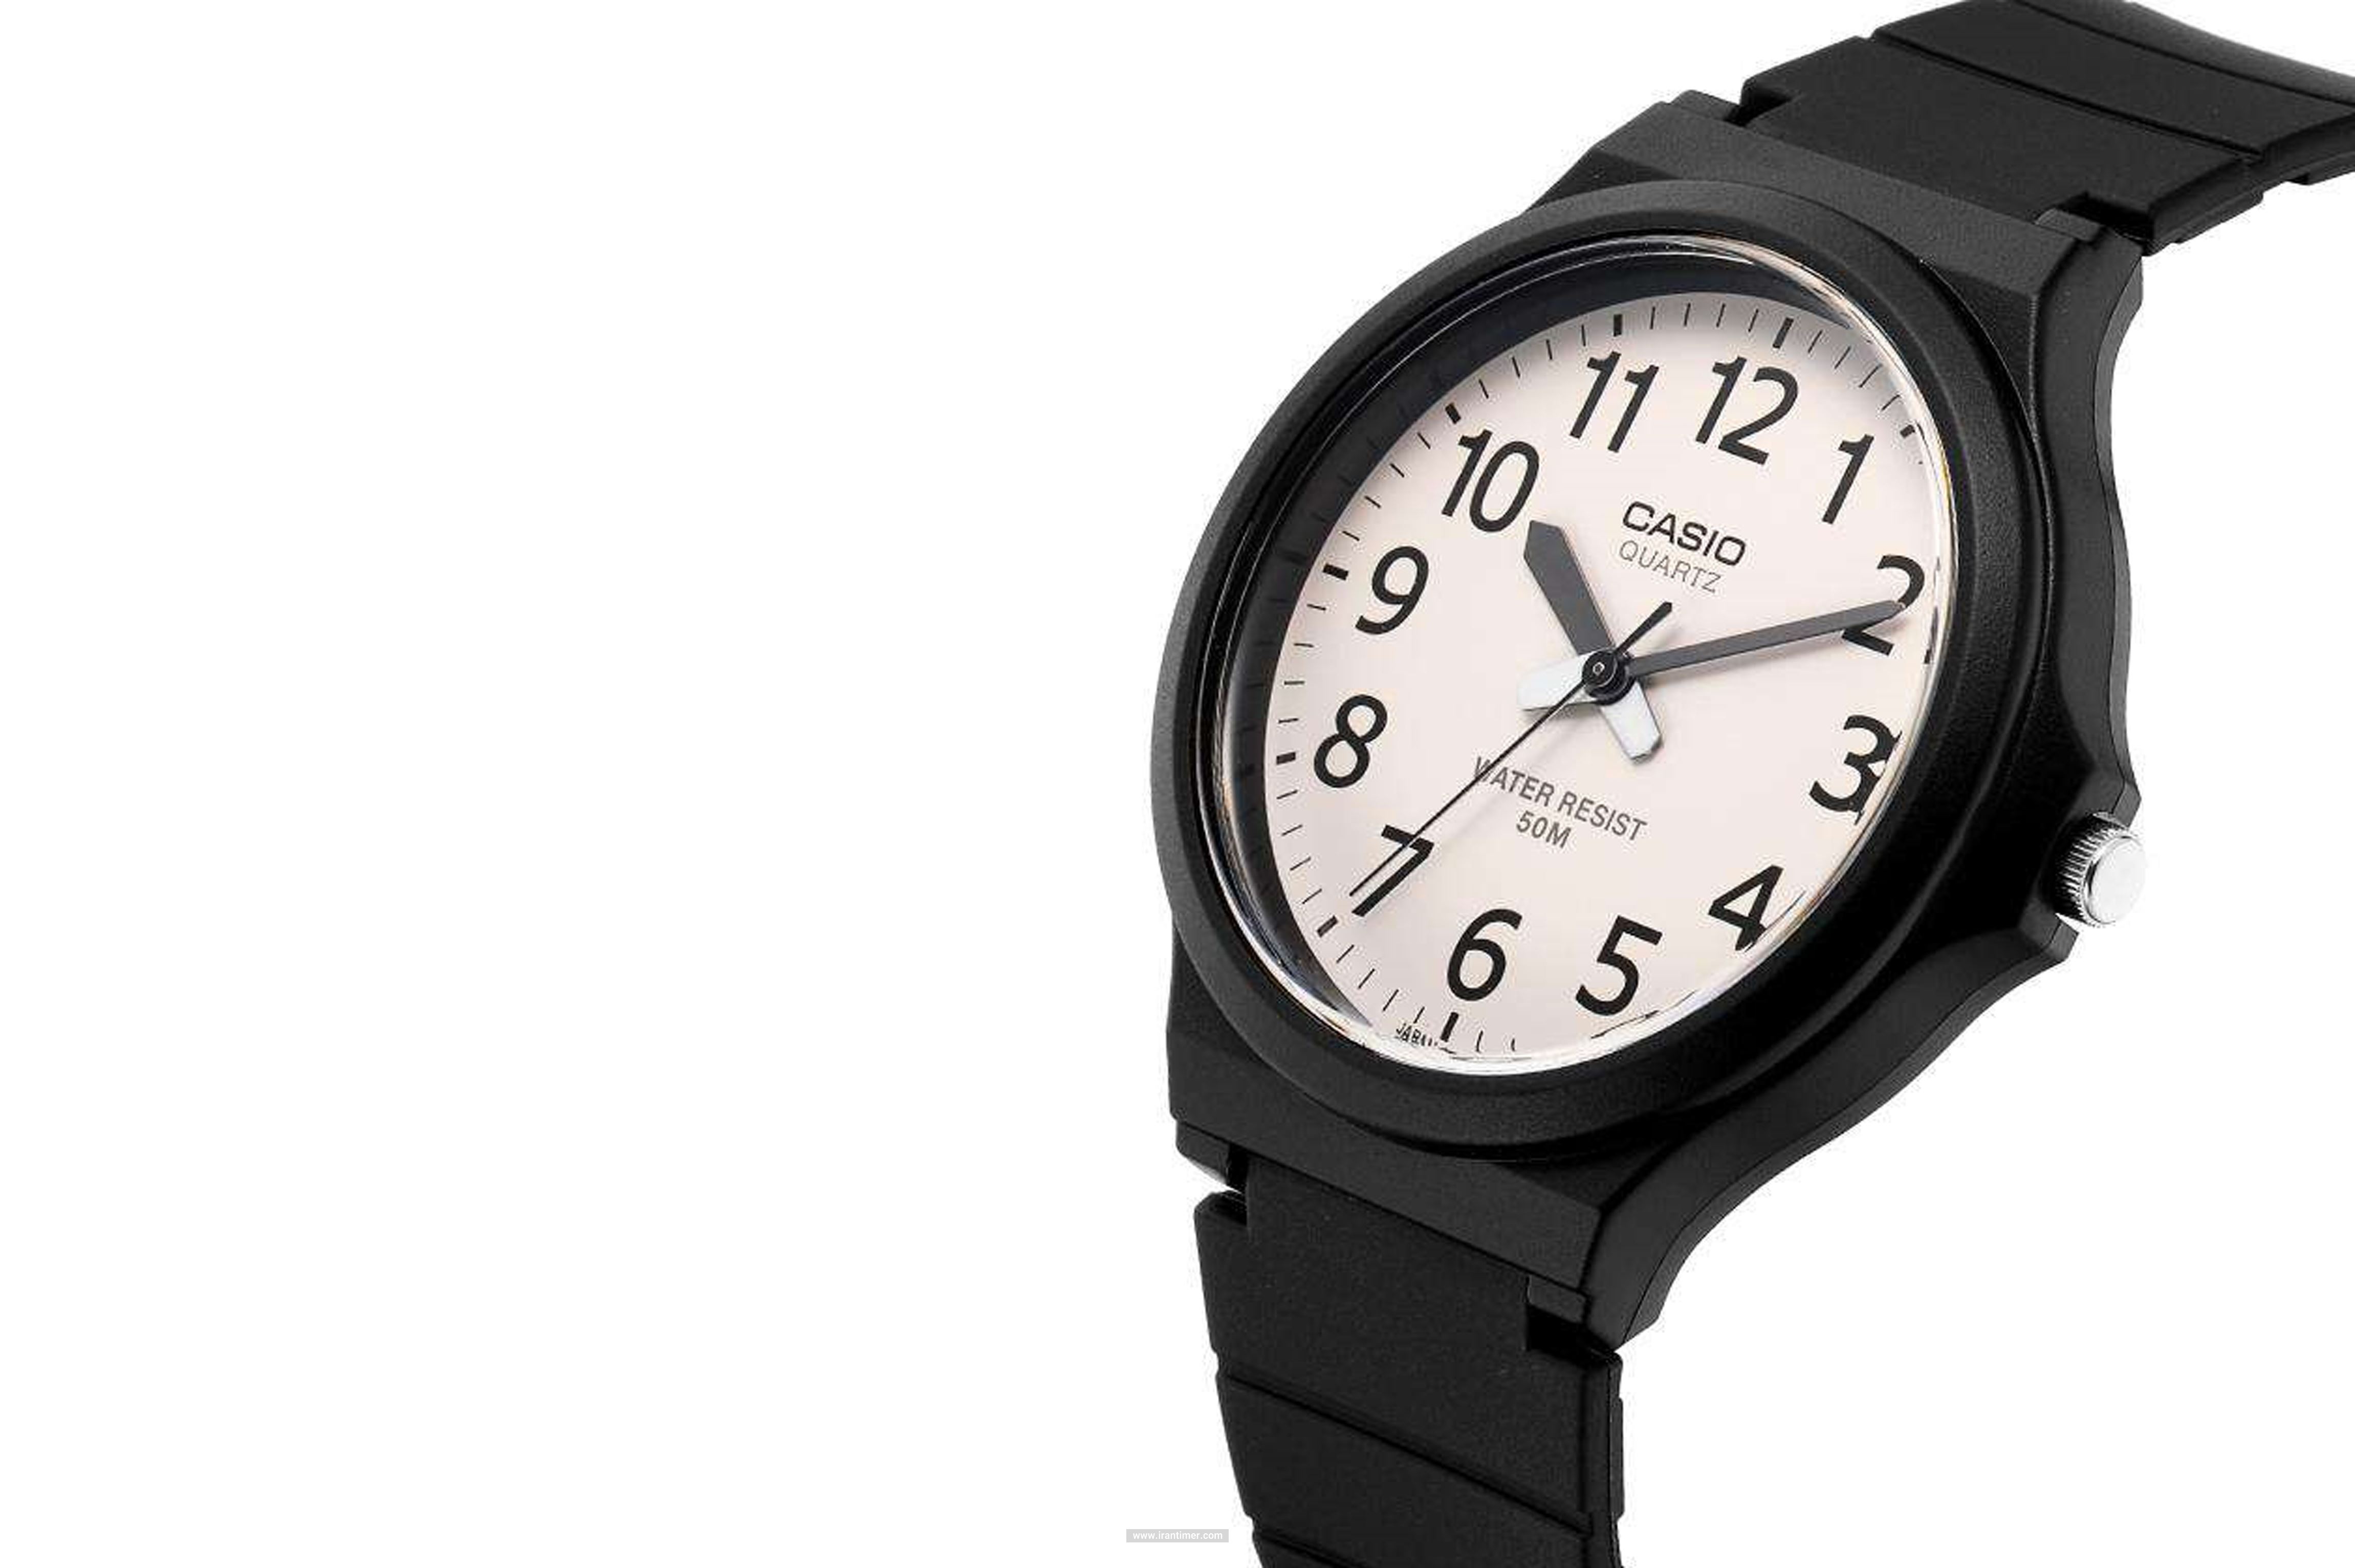 خرید ساعت مچی مردانه و زنانه کاسیو مدل MW-240-7BVDF مناسب چه افرادی است؟